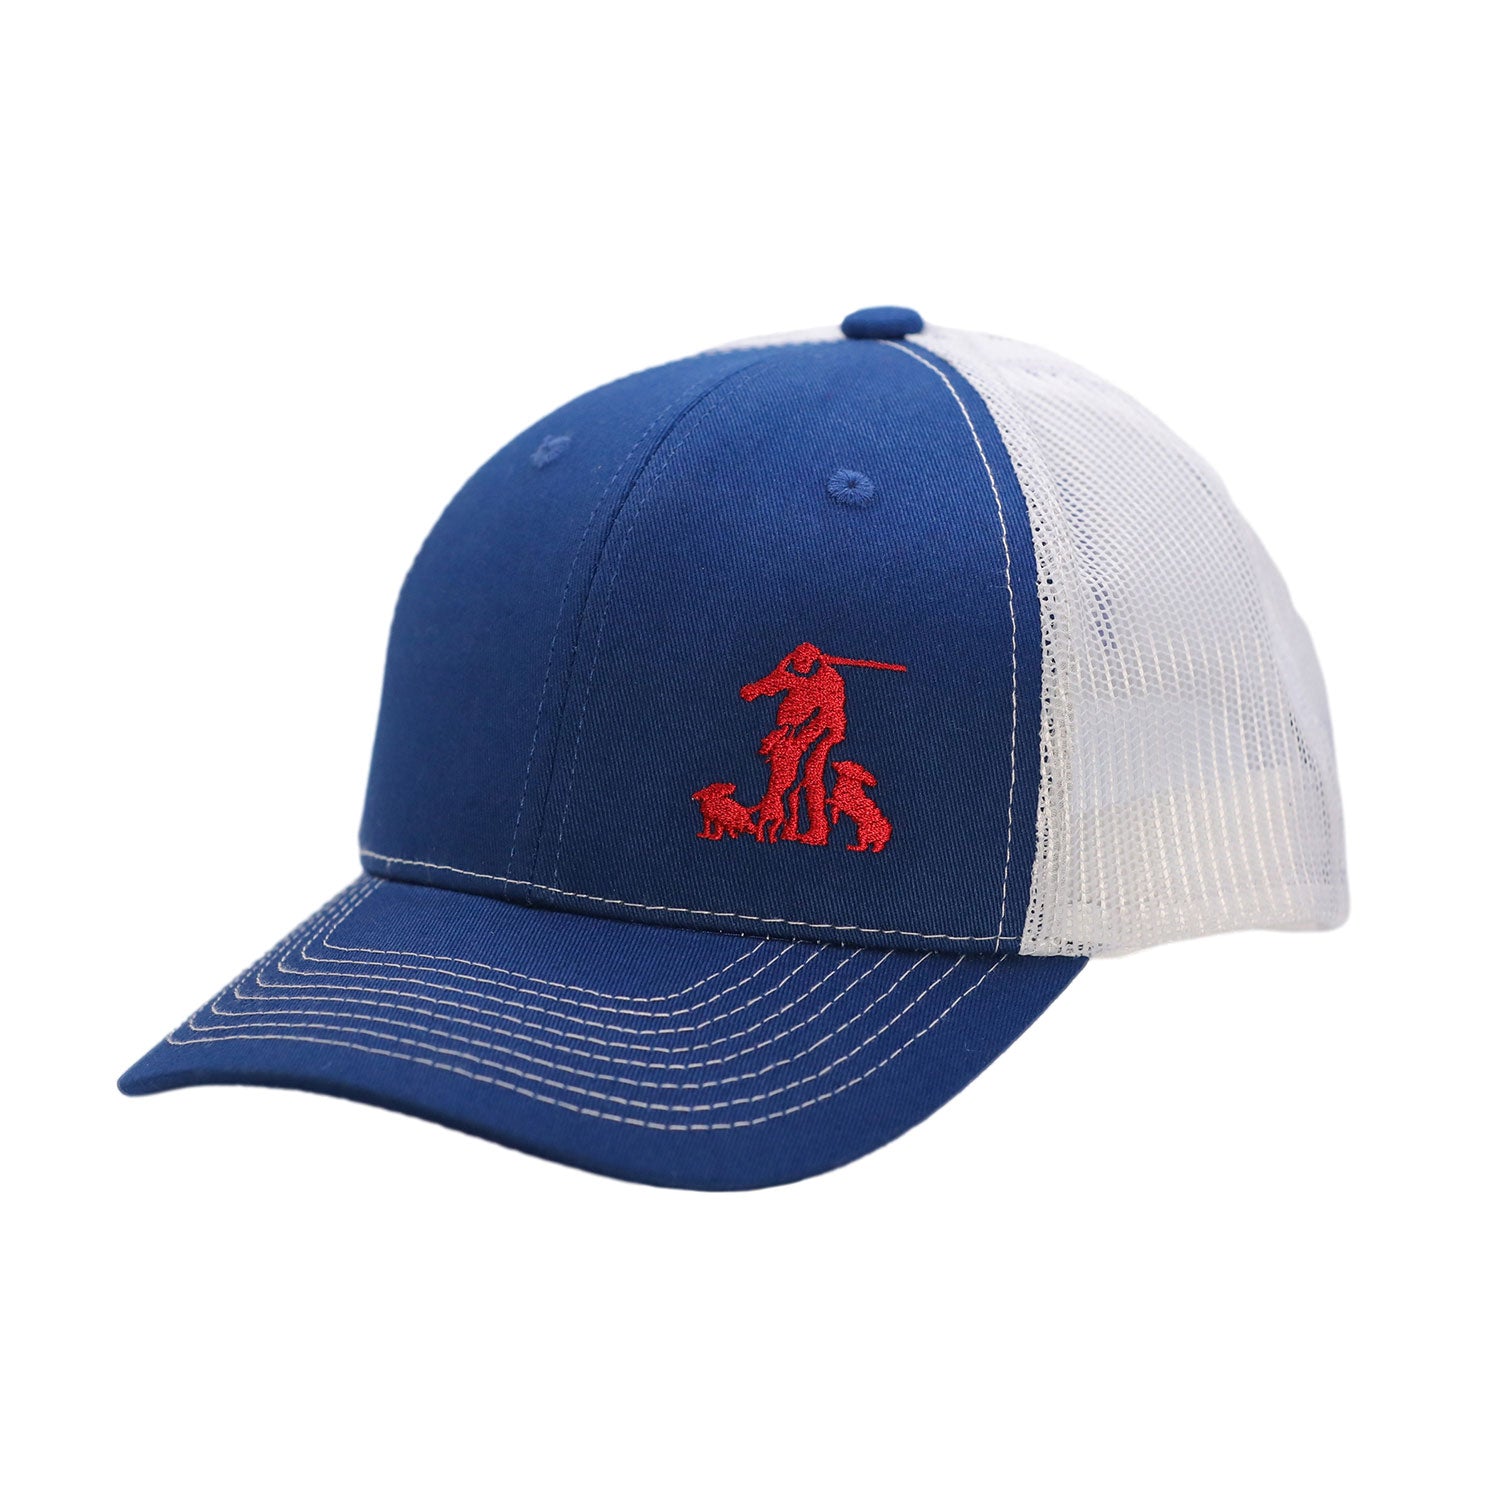 Ryglen Hat - Trucker Style Blue and white with red logo - Ryglen Gundogs